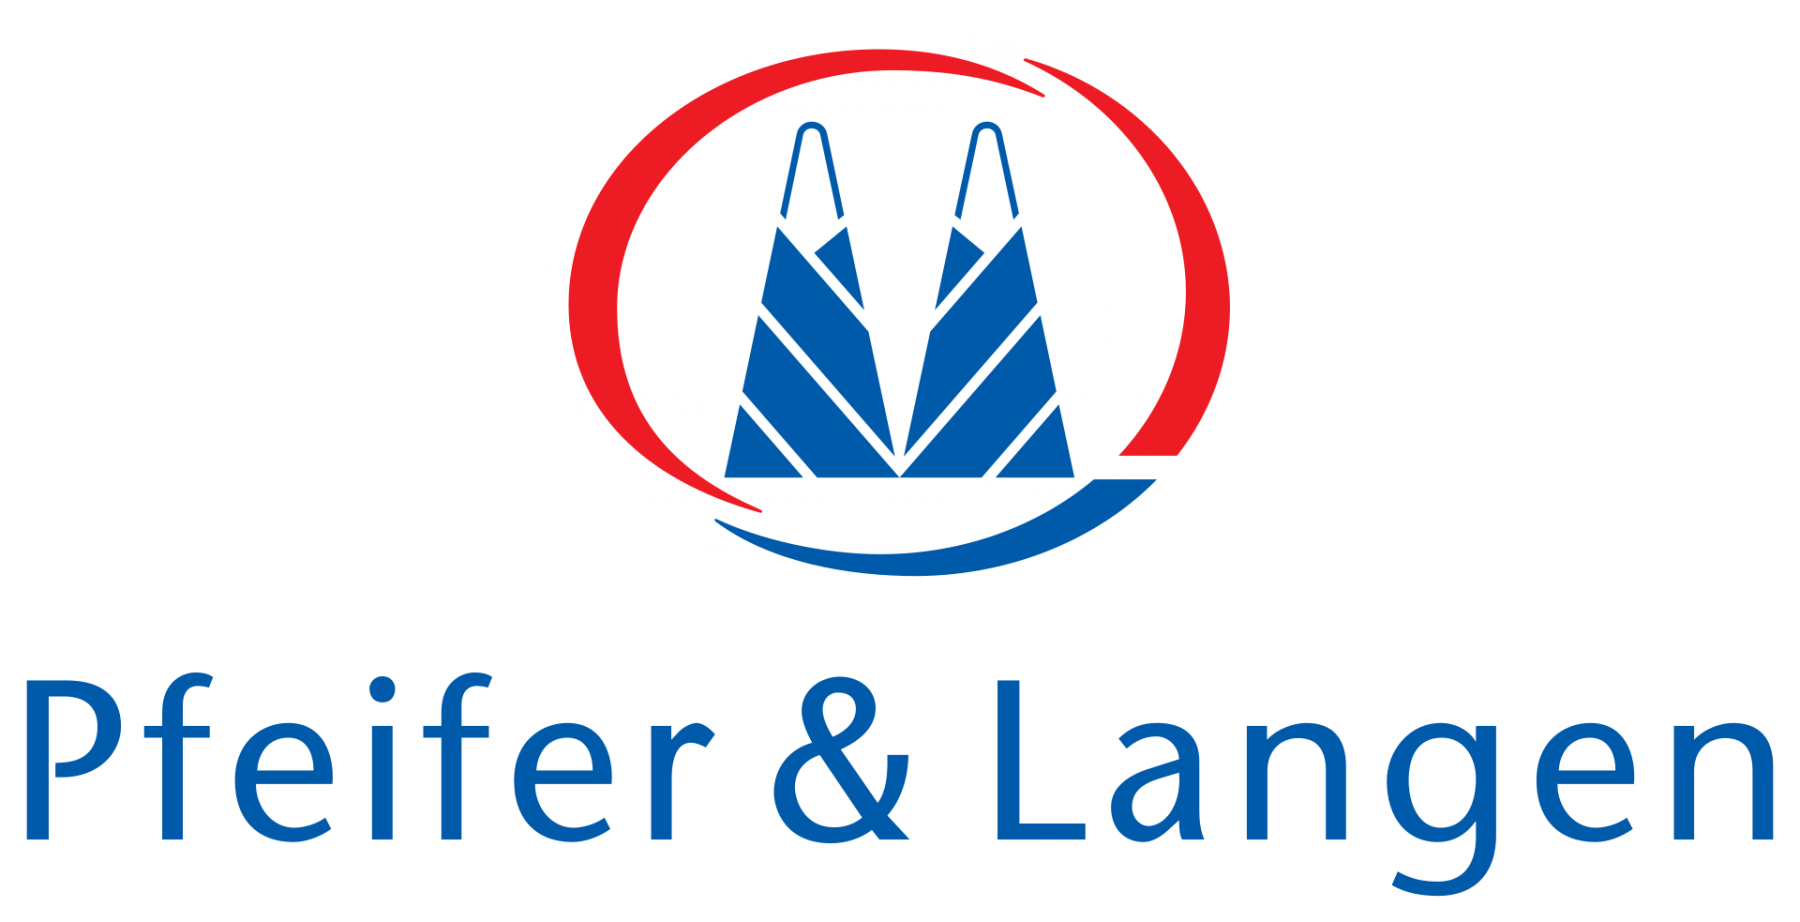 Auch die beiden Zuckerhüte aus dem Logo der Zuckerfabrik Pfeifer & Langen  sollen an den Dom erinnern.